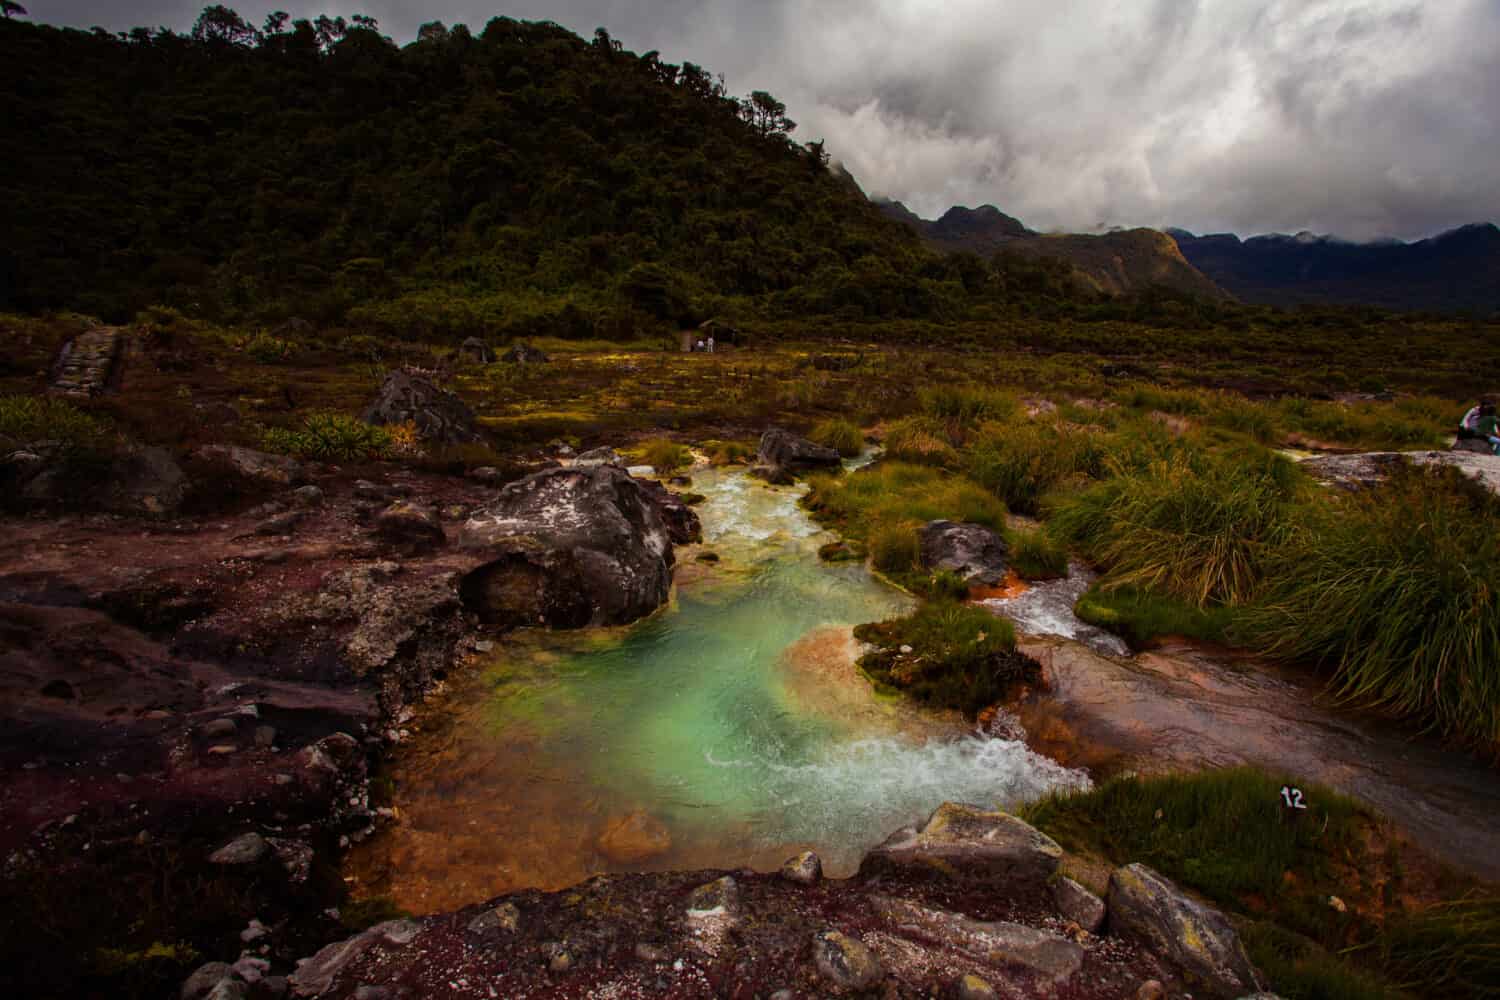 Parque Nacional Natural Puracé in Cauca, Colombia